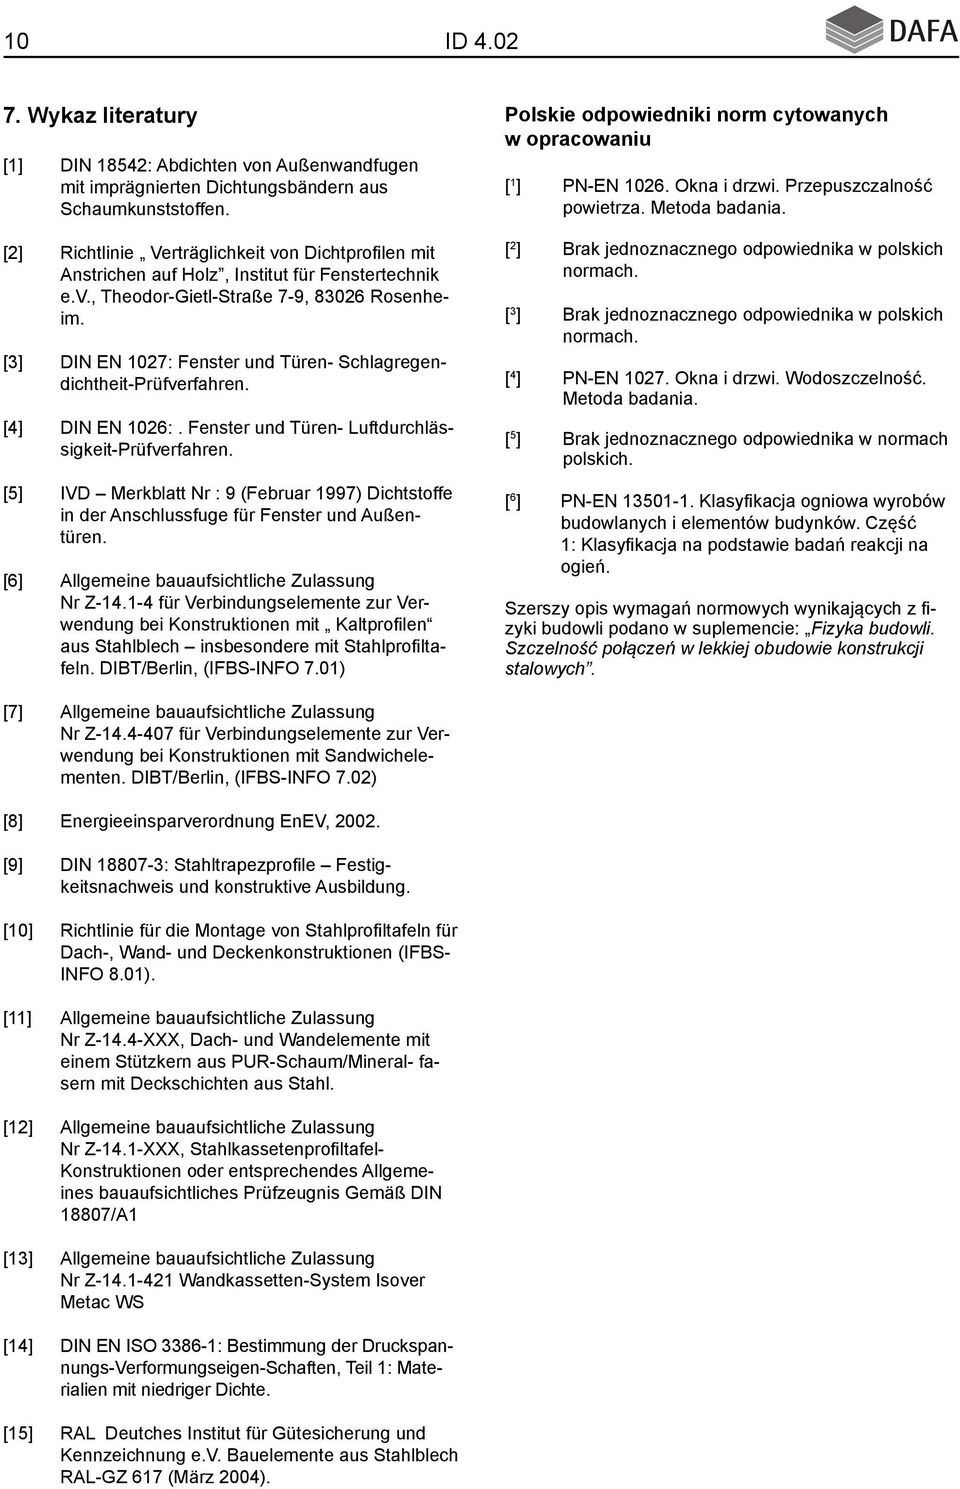 [2] Richtlinie Verträglichkeit von Dichtprofilen mit Anstrichen auf Holz, Institut für Fenstertechnik e.v., Theodor-Gietl-Straße 7-9, 83026 Rosenheim.